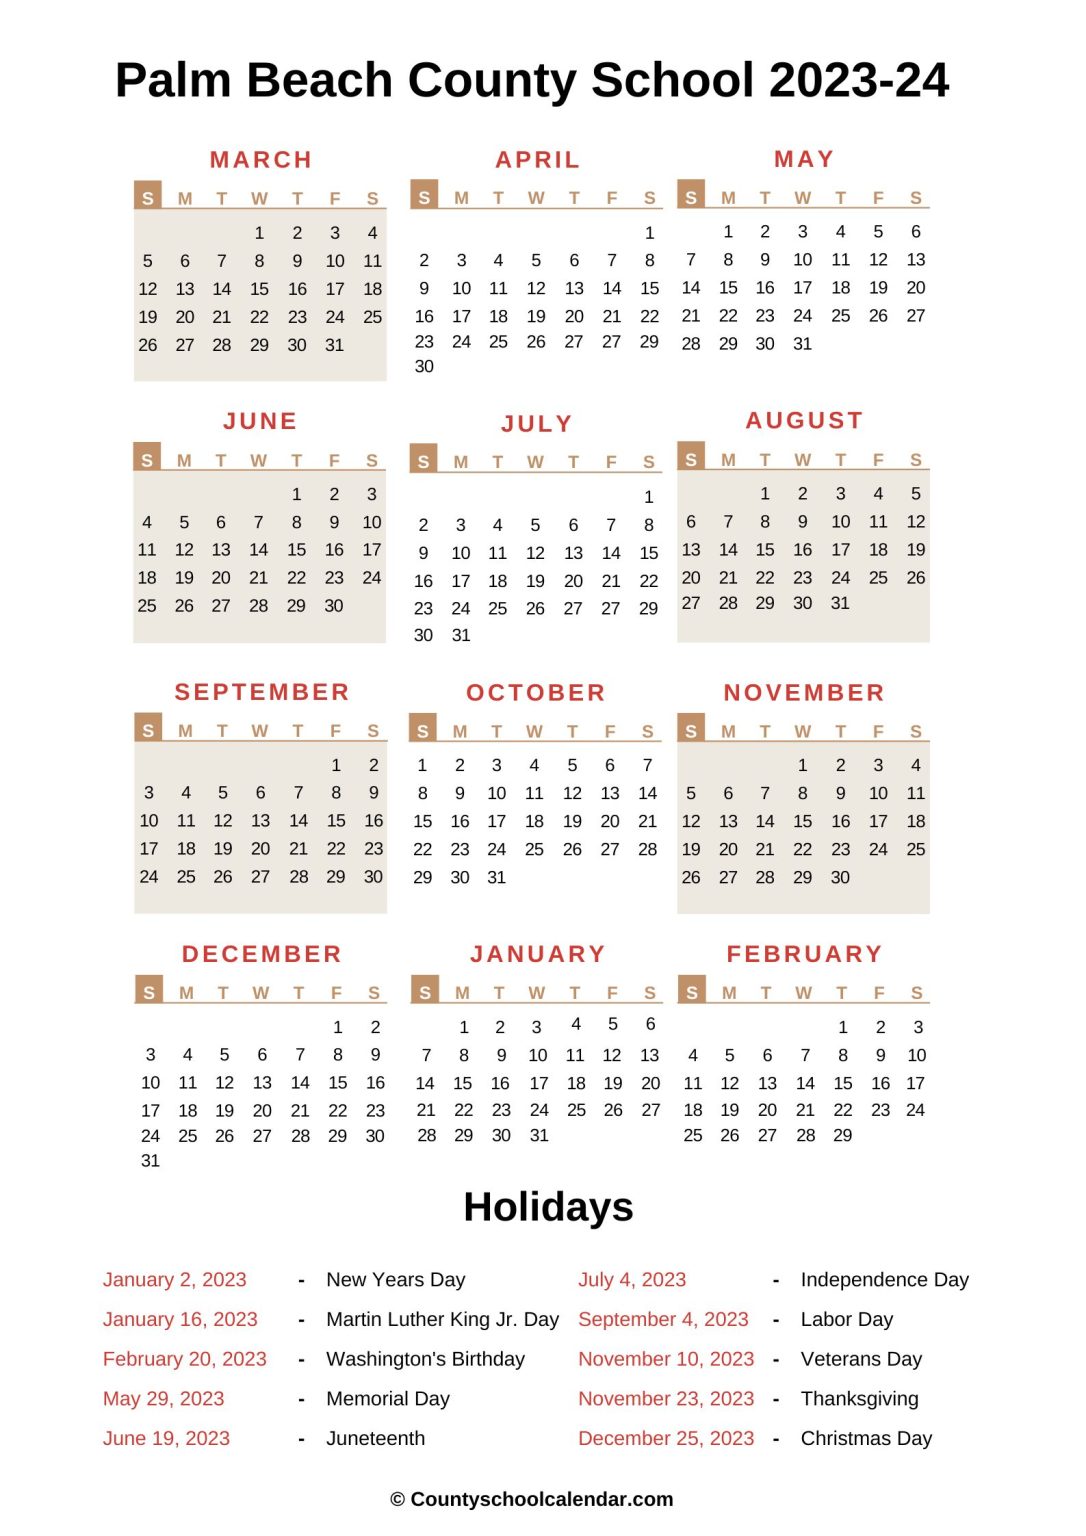 Palm Beach County School Calendar (20222023) with Holidays